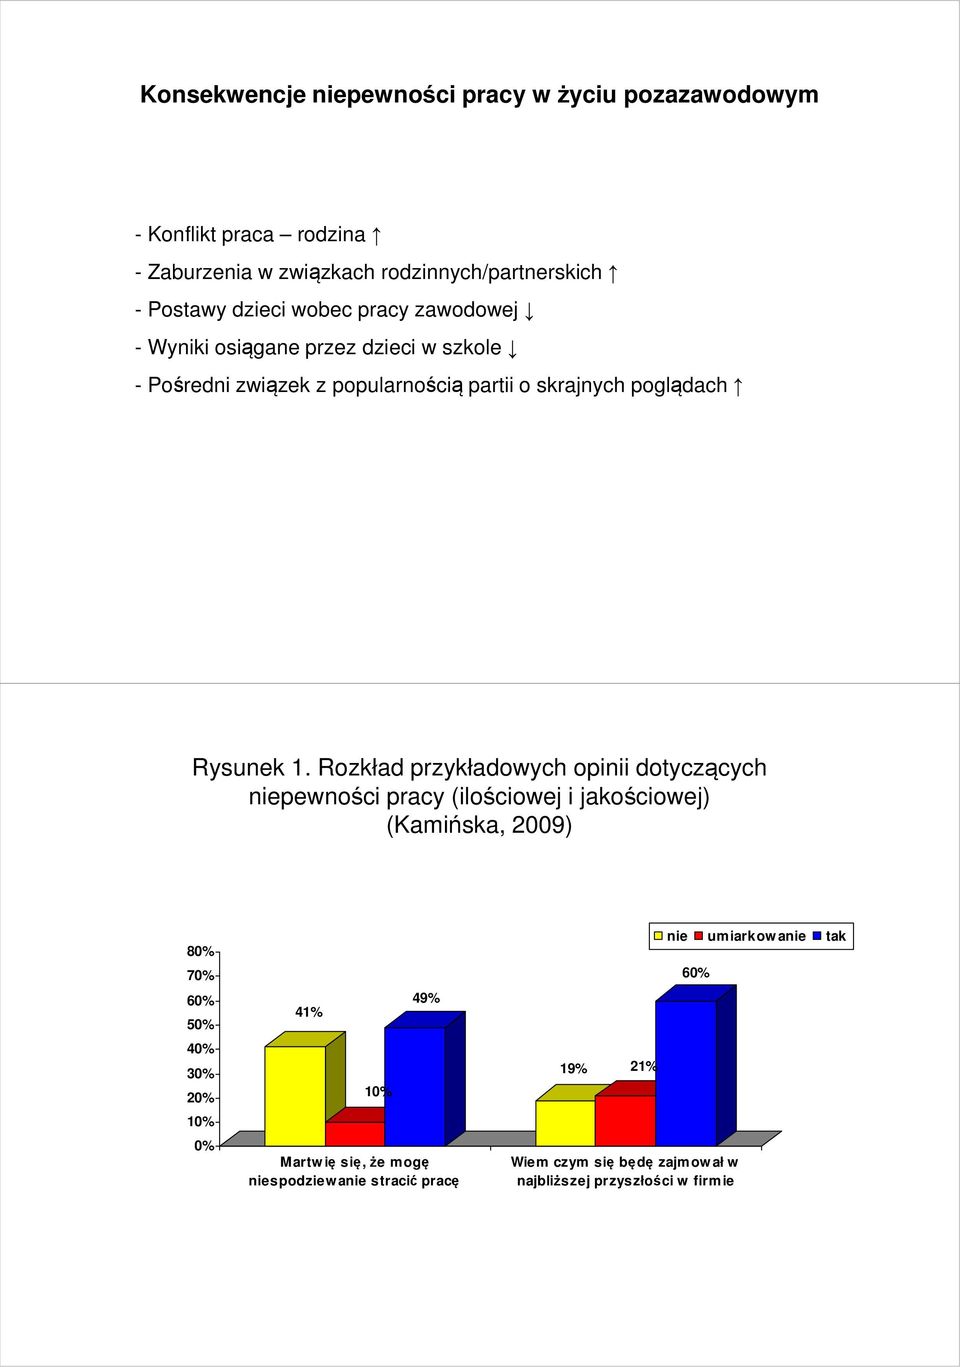 Rozkład przykładowych opinii dotyczących niepewności pracy (ilościowej i jakościowej) (Kamińska, 2009) 80% 70% 60% 50% 40% 30% 20% 10% 0% 41% 10%